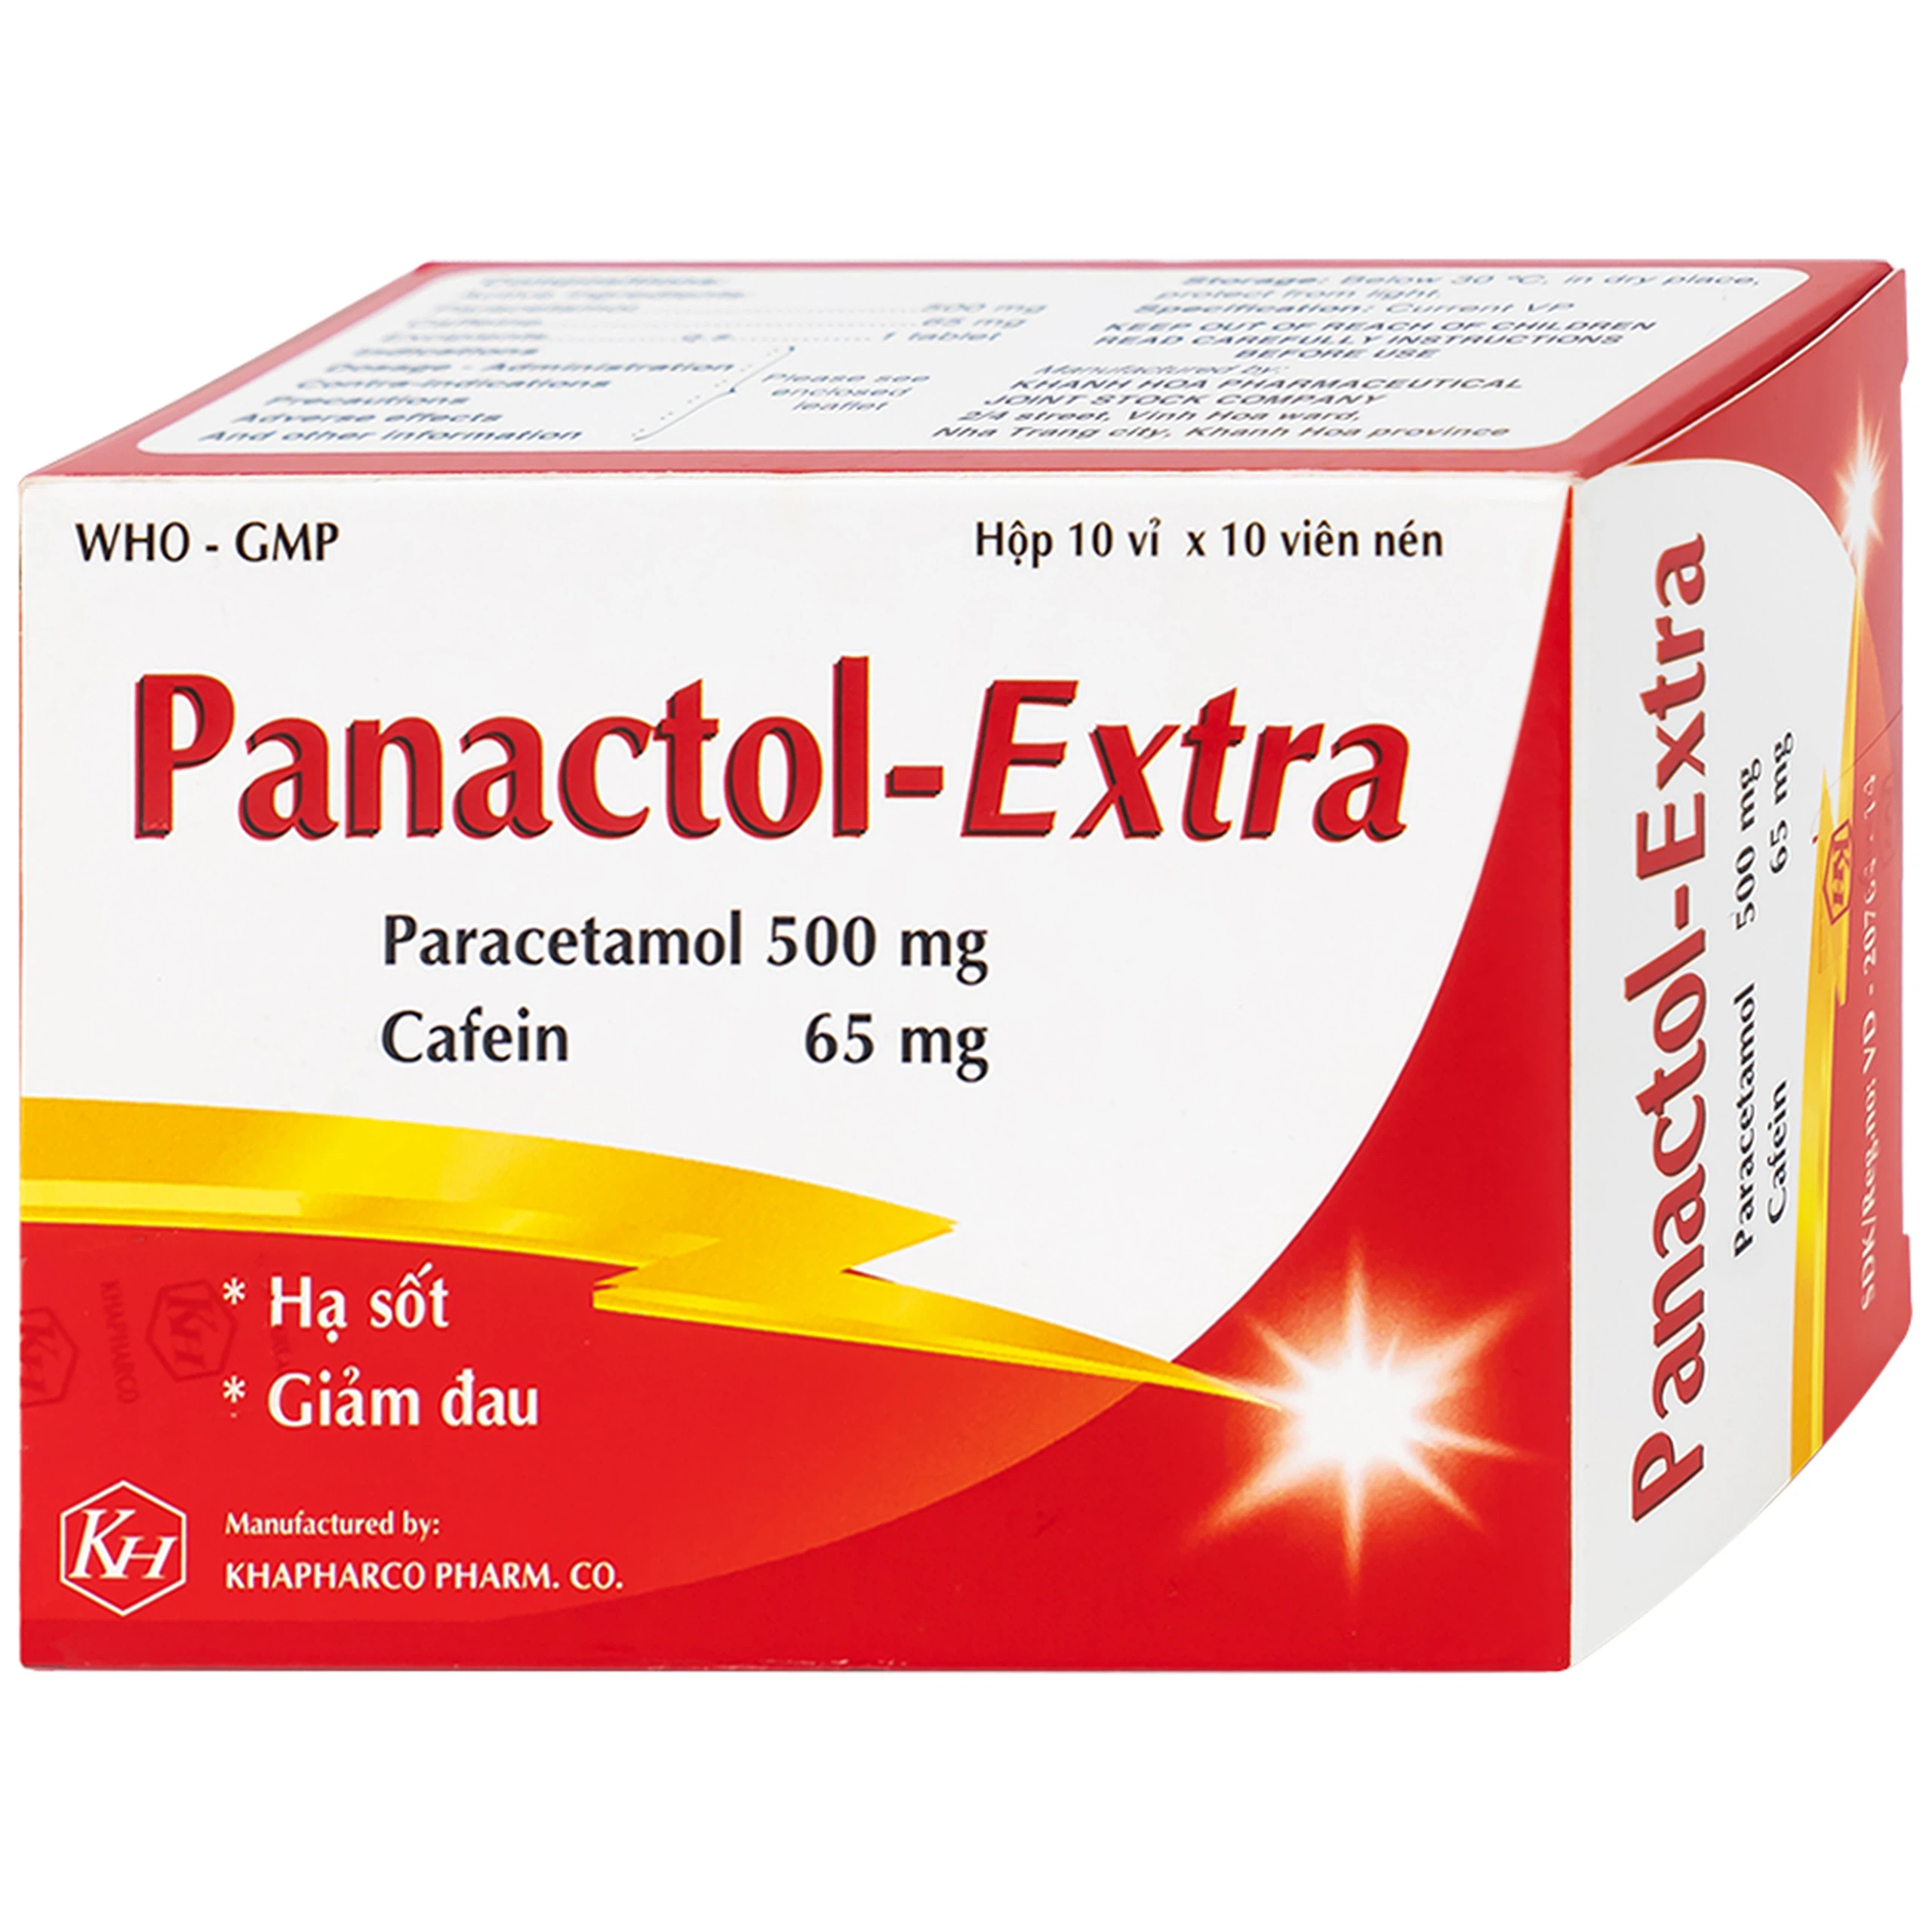 Viên nén Panactol Extra Khapharco hạ sốt, giảm đau (10 vỉ x 10 viên)